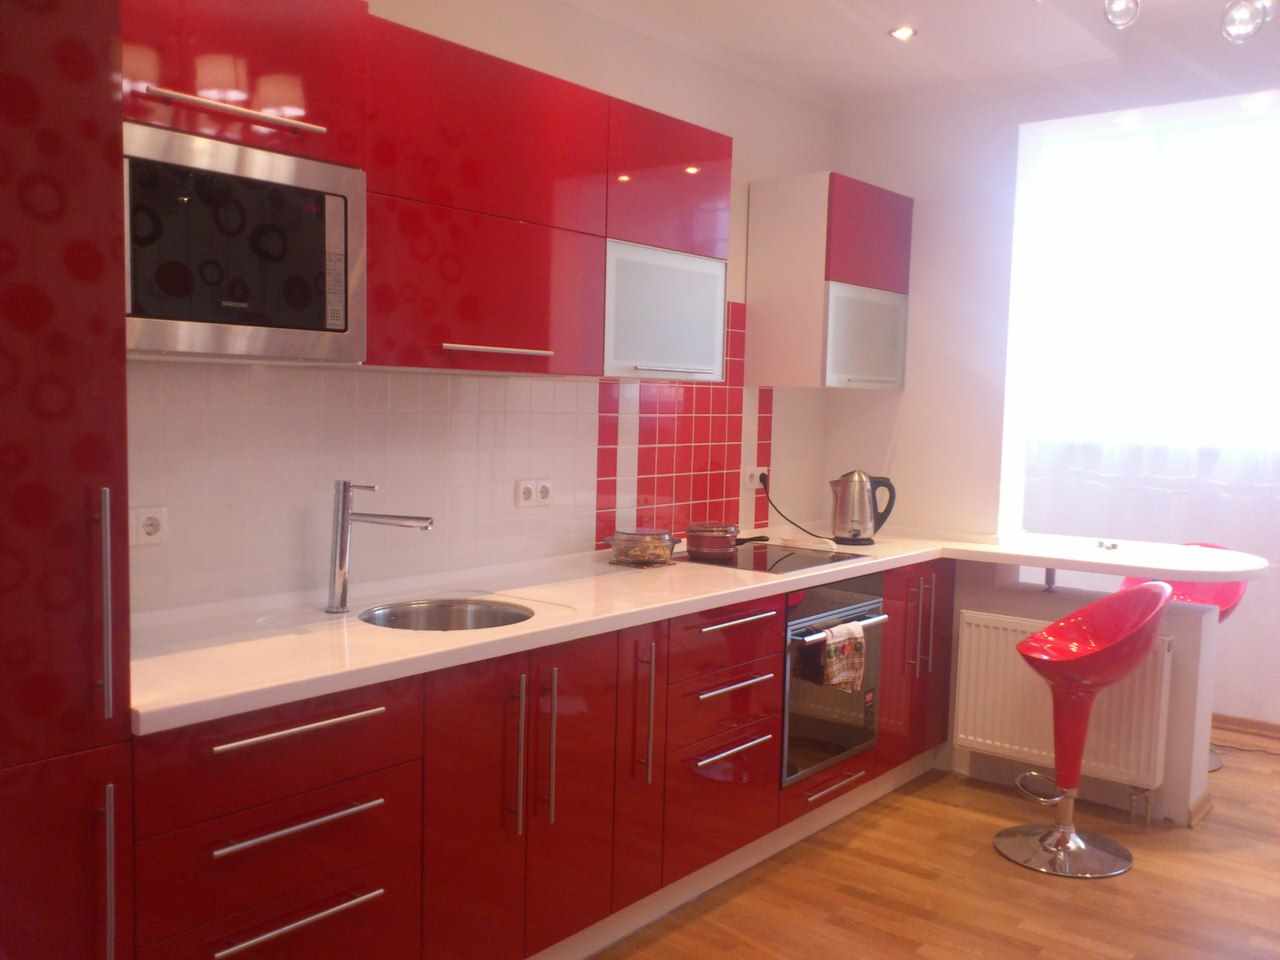 variant af en smuk indretning af rødt køkken